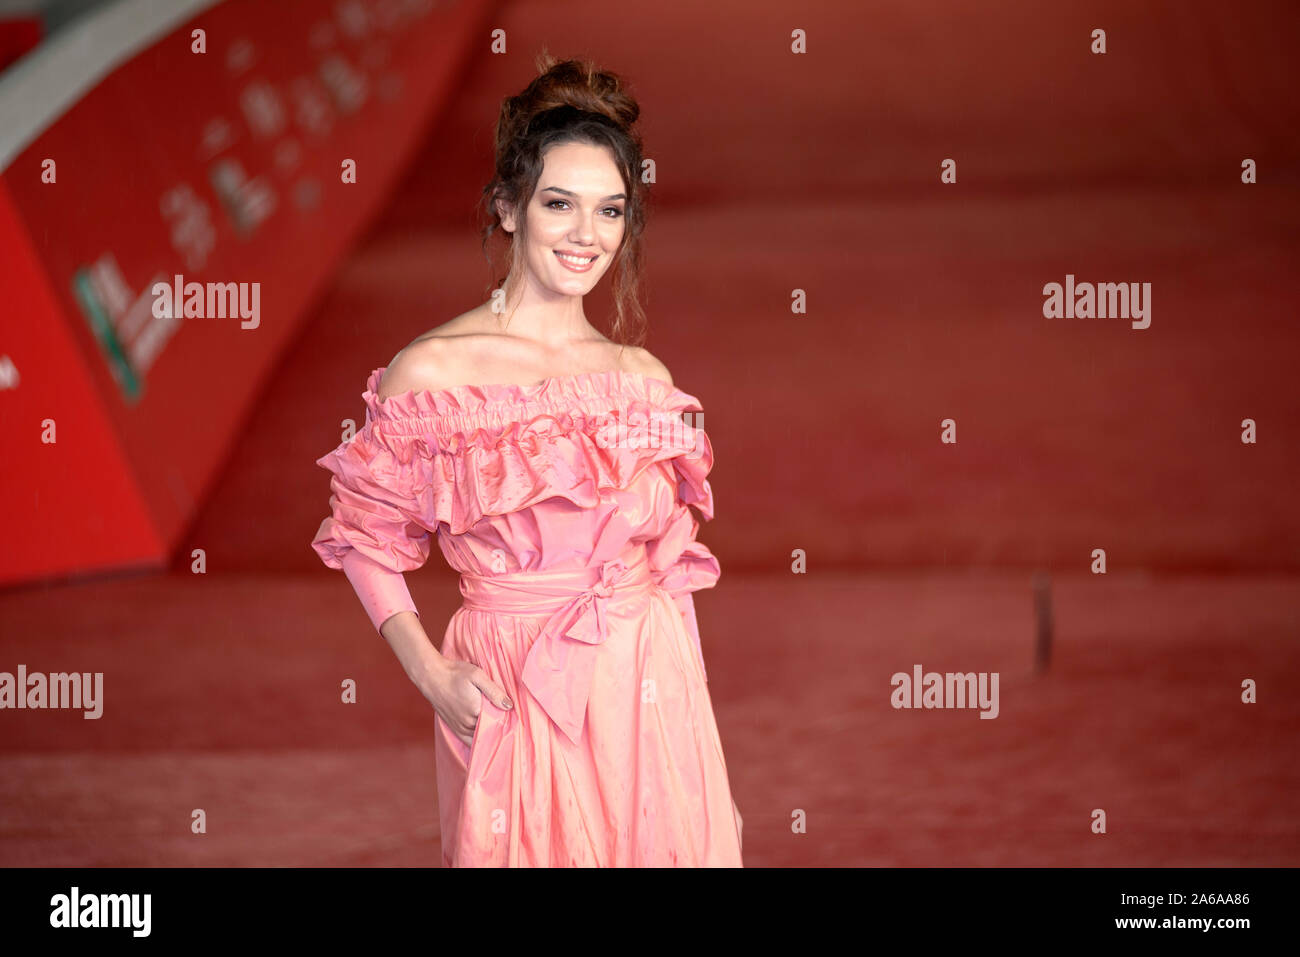 Klaudia Pepa frequentando il tappeto rosso durante la festa del cinema di Roma 2019 Foto Stock